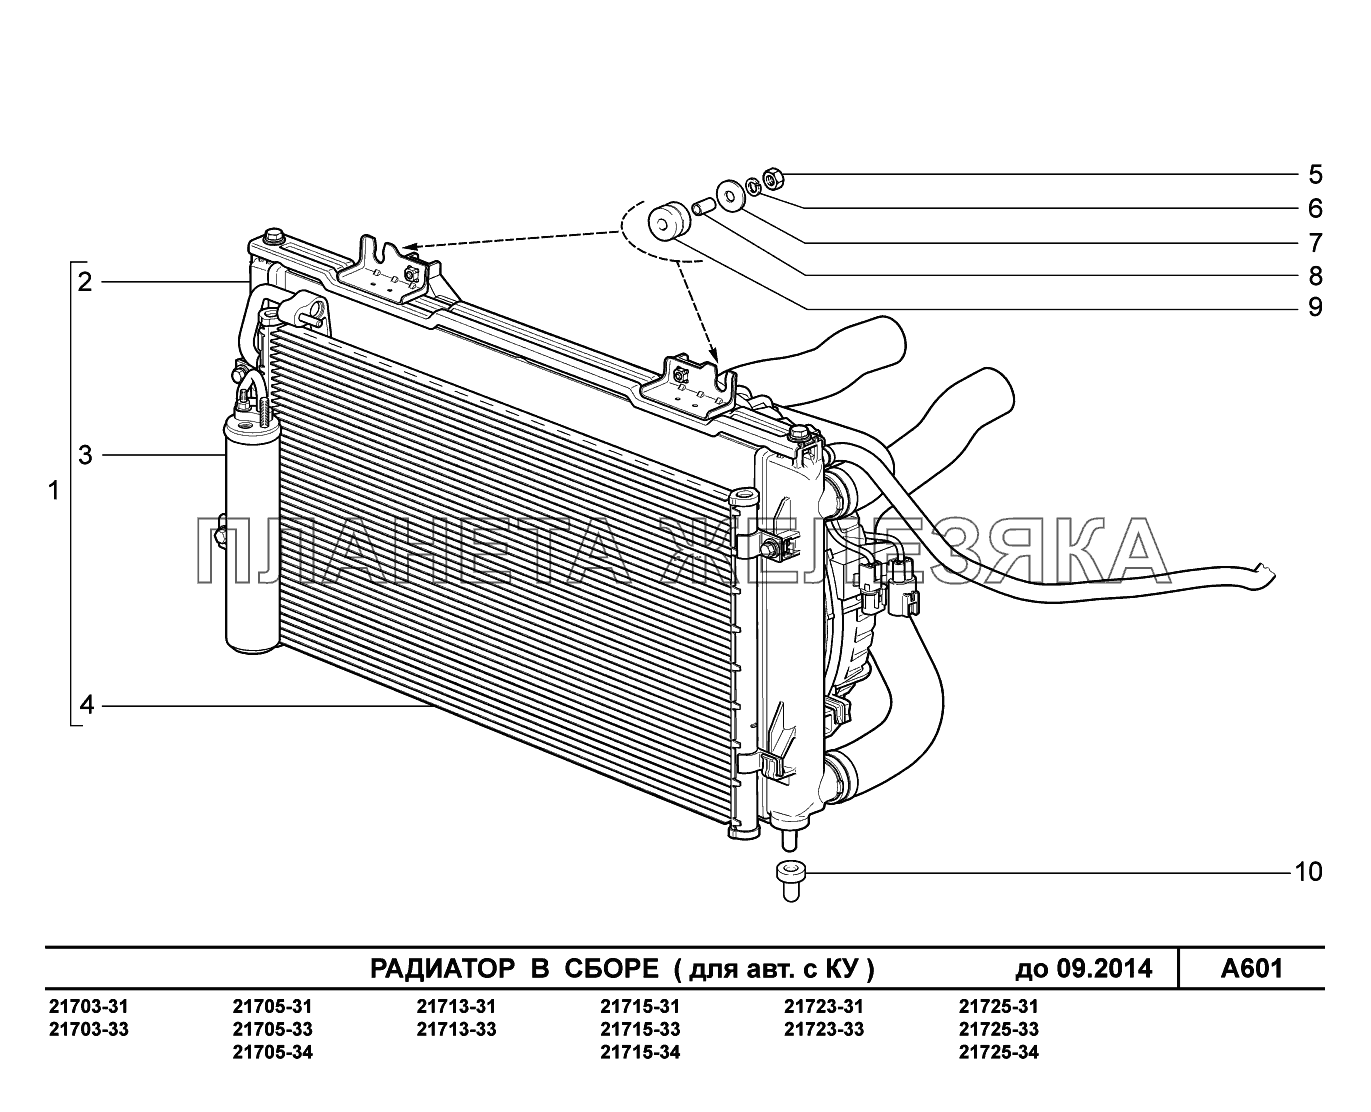 A601. Радиатор в сборе ВАЗ-2170 